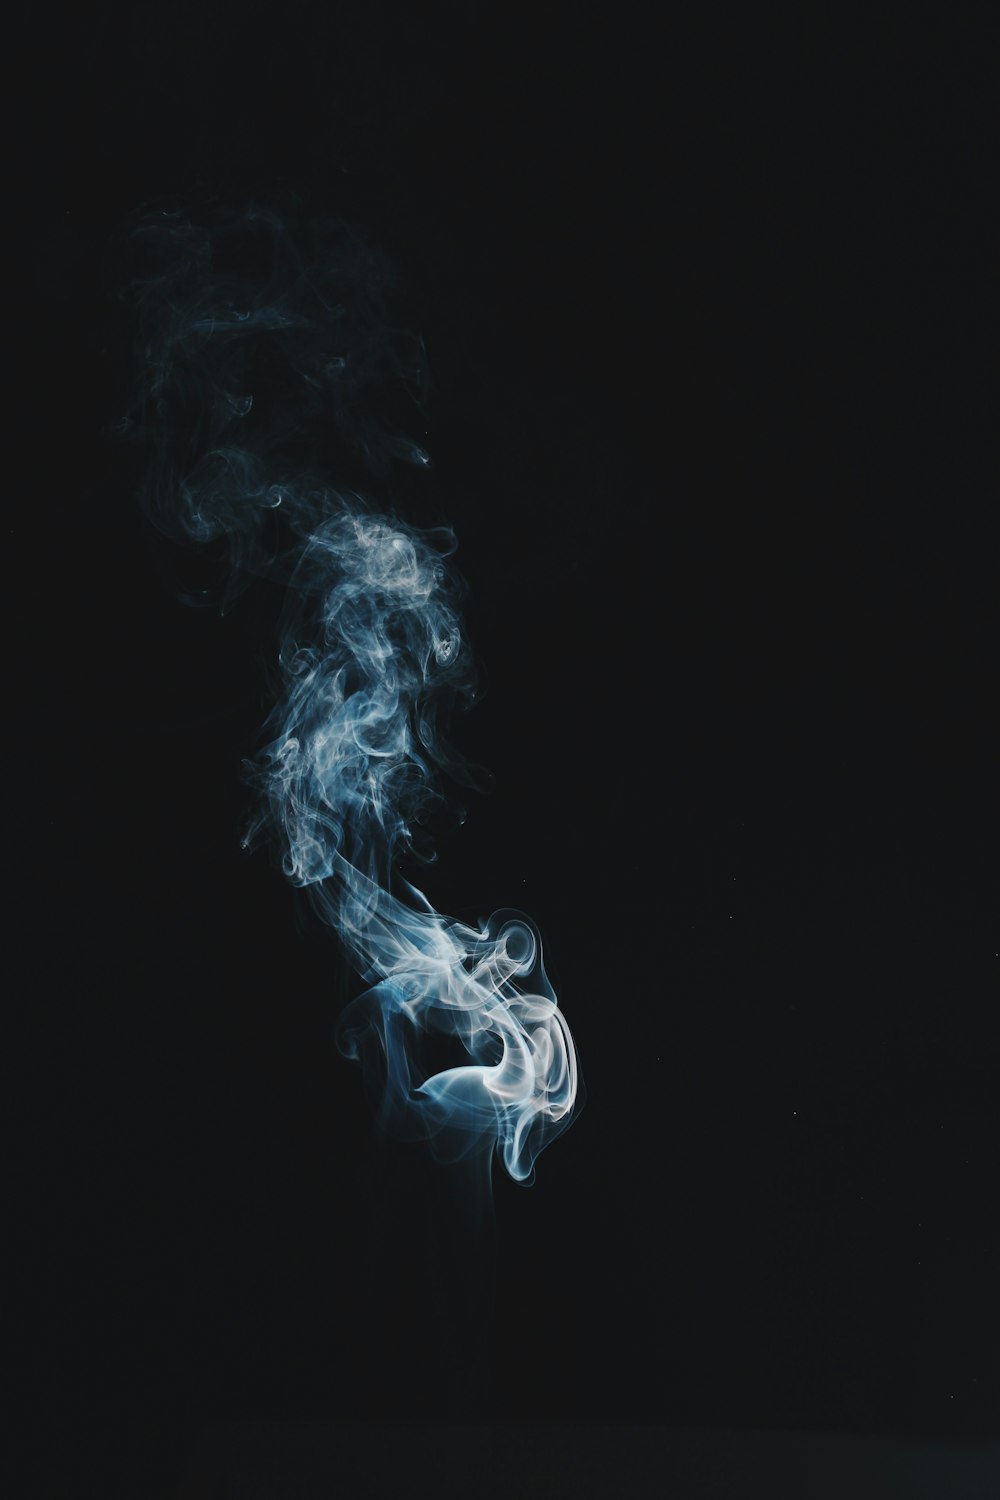 Hình ảnh khói Png của Unsplash sẽ khiến cho bạn phải trầm trồ vì độ tinh tế và độc đáo. Với hình ảnh này, bạn có thể dễ dàng tạo ra các thiết kế độc đáo và đầy ấn tượng cho các bản in hoặc trang web.